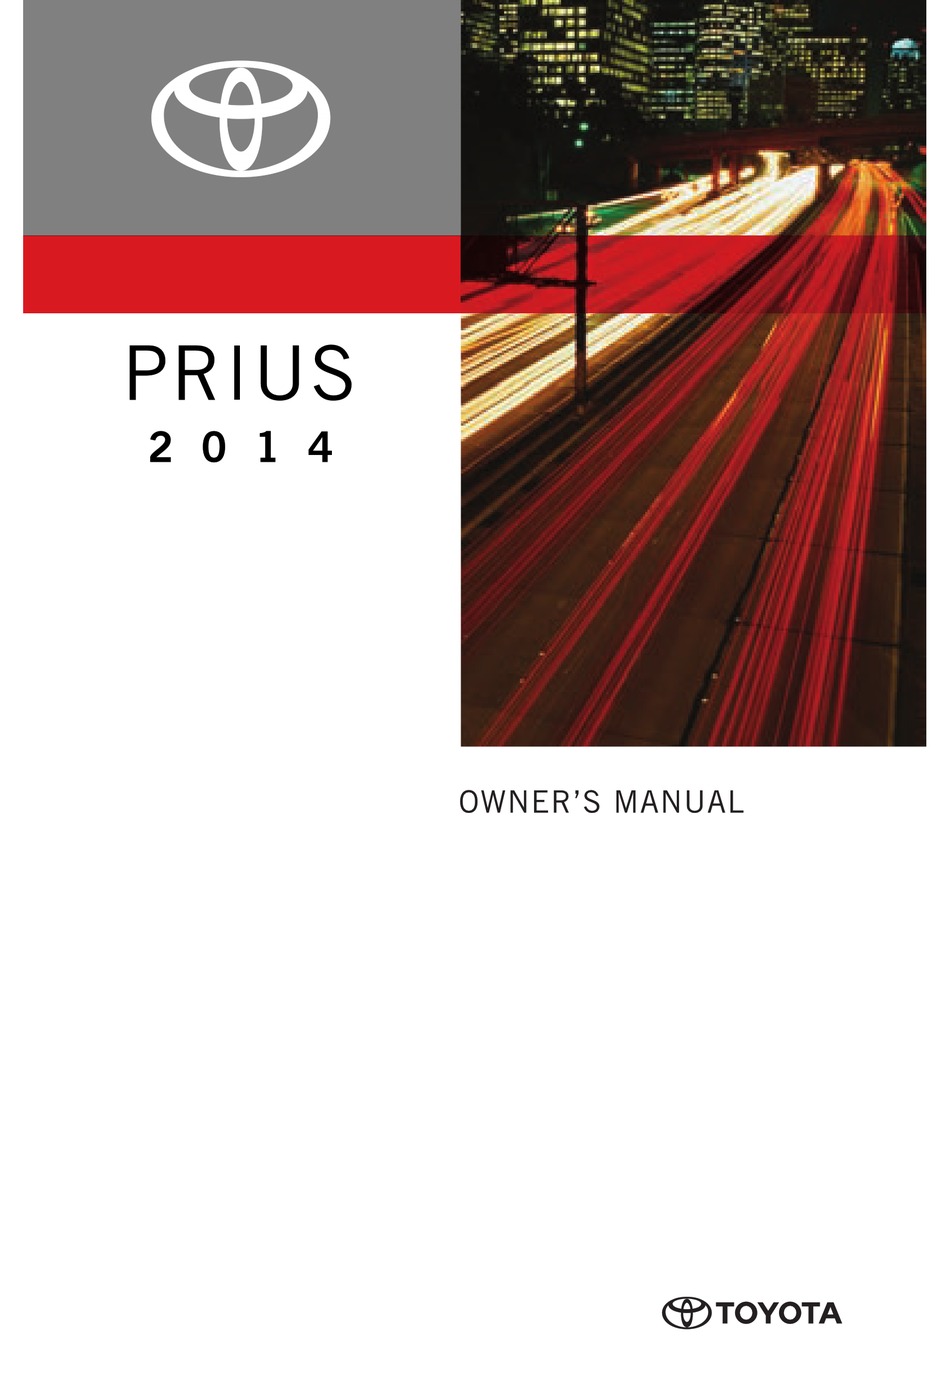 TOYOTA 2014 PRIUS OWNER'S MANUAL Pdf Download | ManualsLib